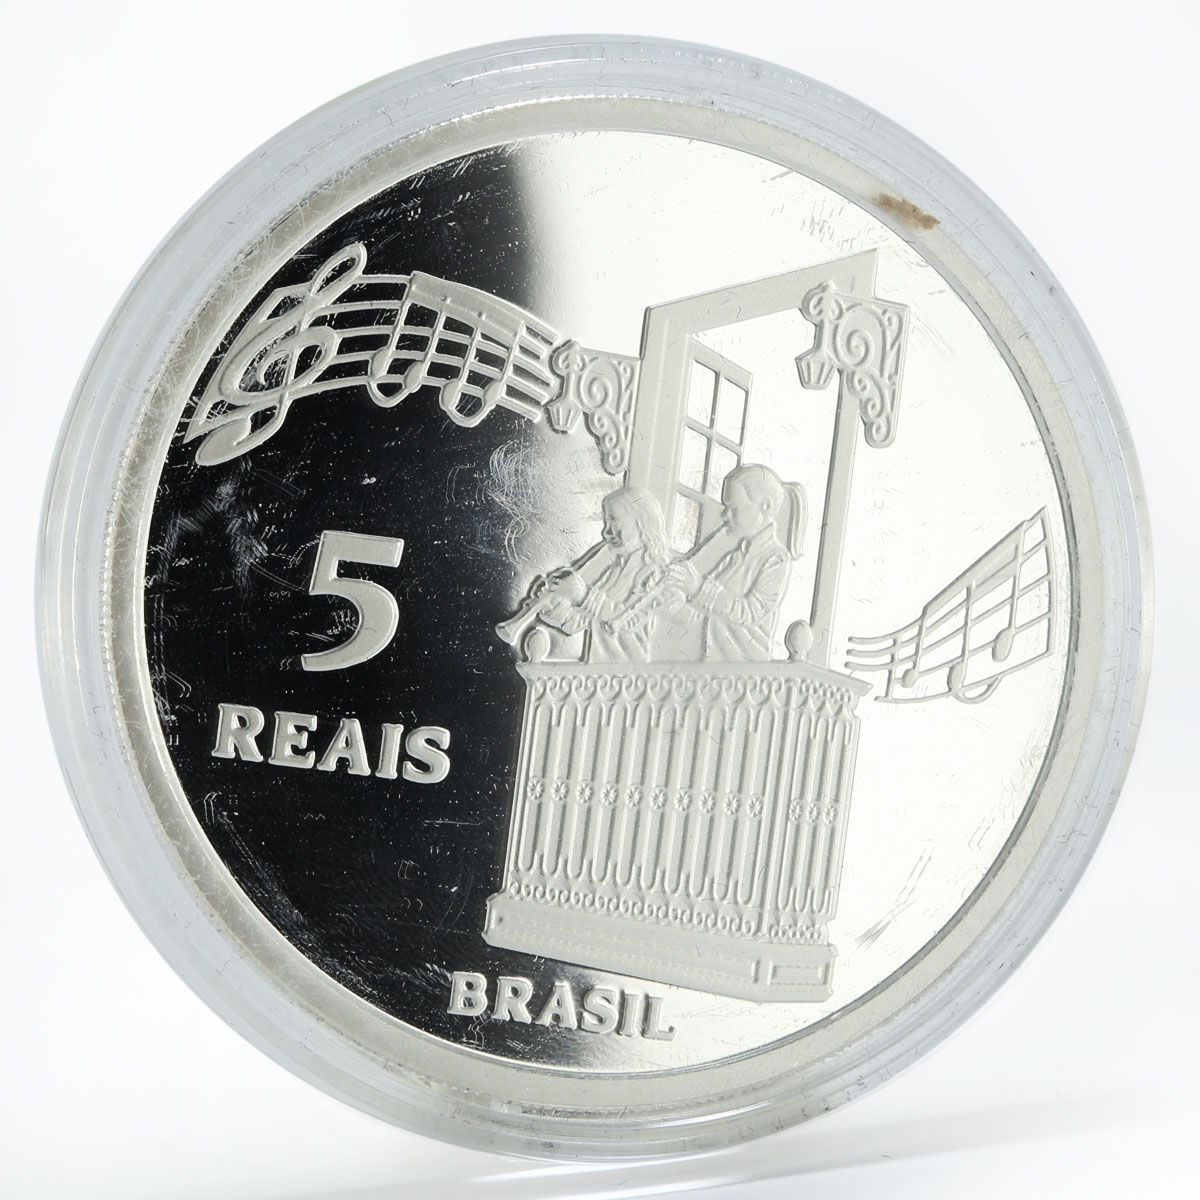 Brazil 5 reais Diamantina World Heritage Unesco silver coin 2013